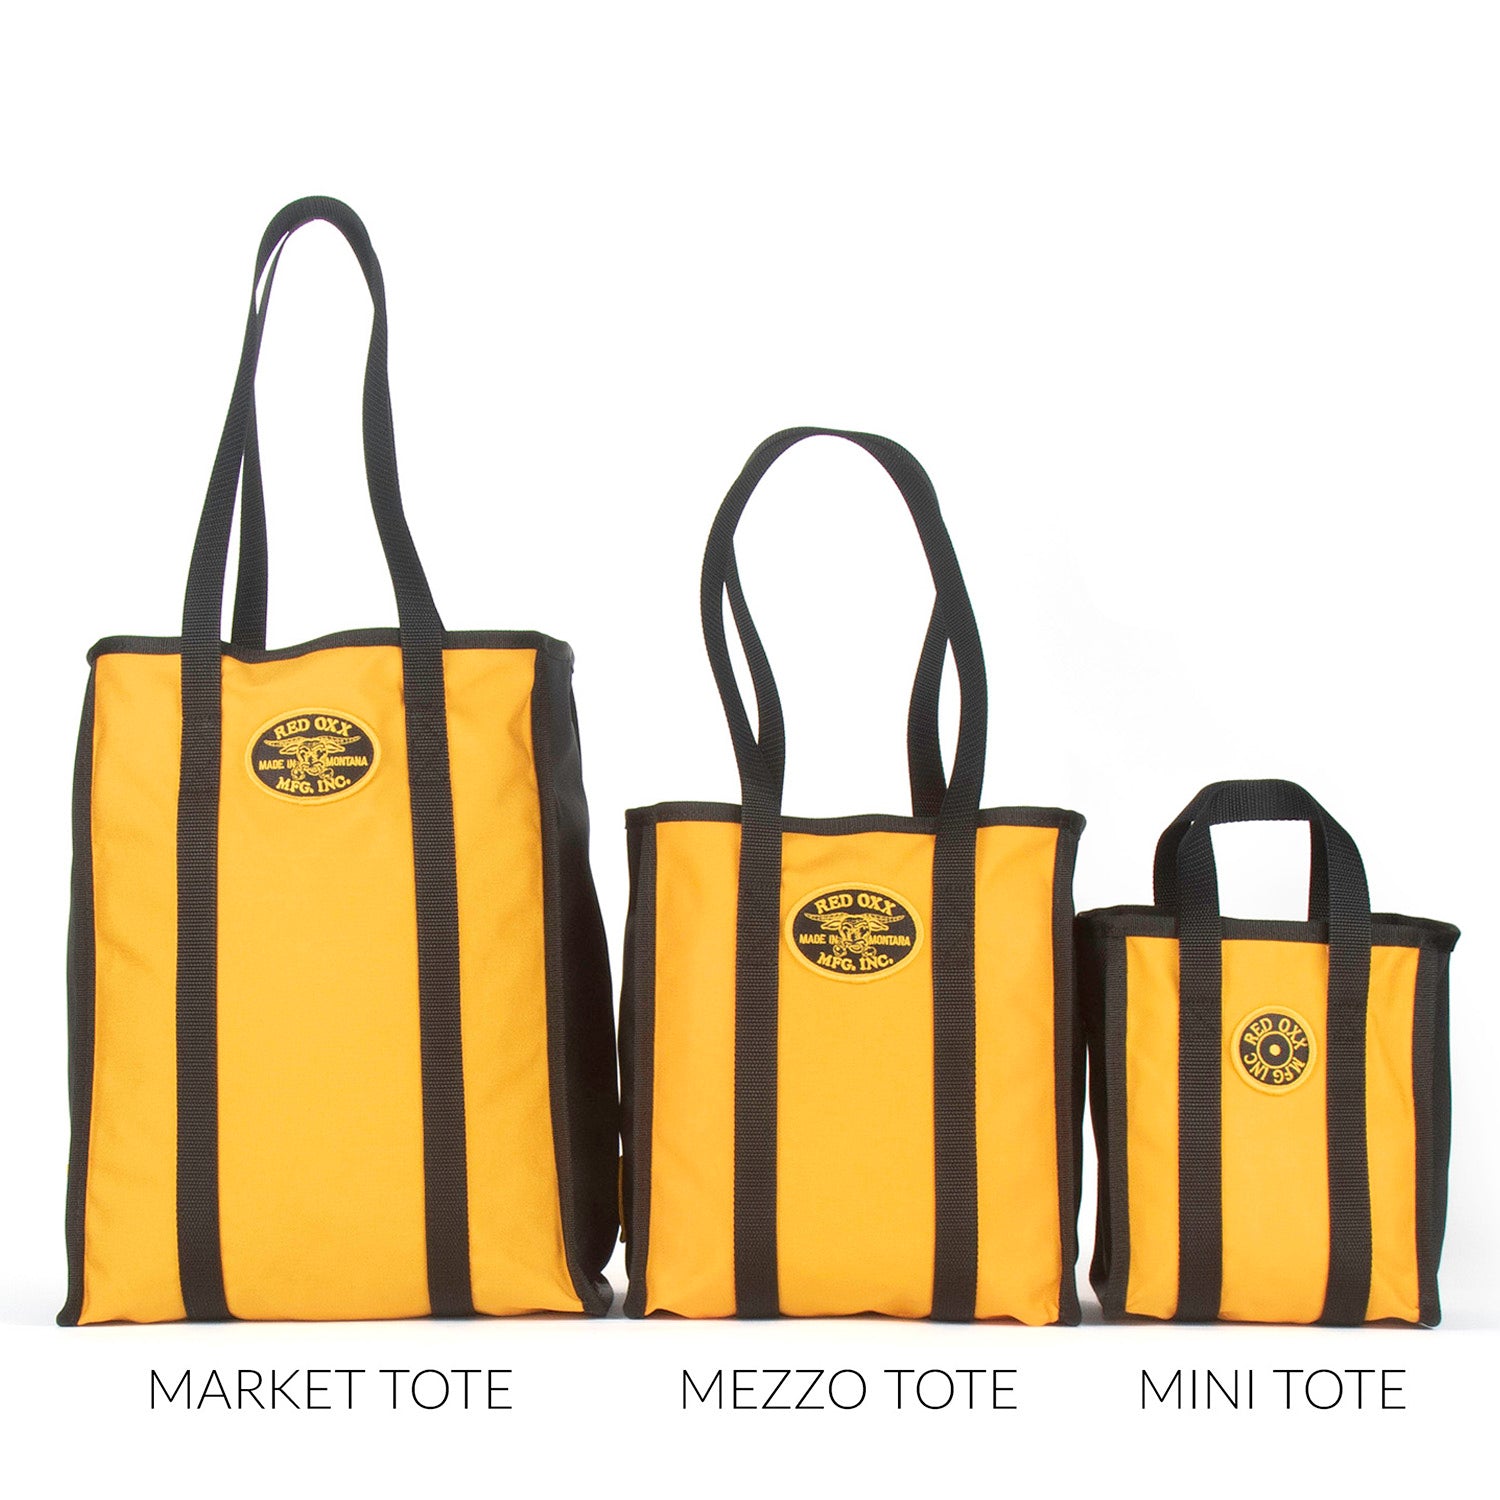 Tote bag comparison from left to right.  Market Tote, Mezzo Tote and Mini Tote.